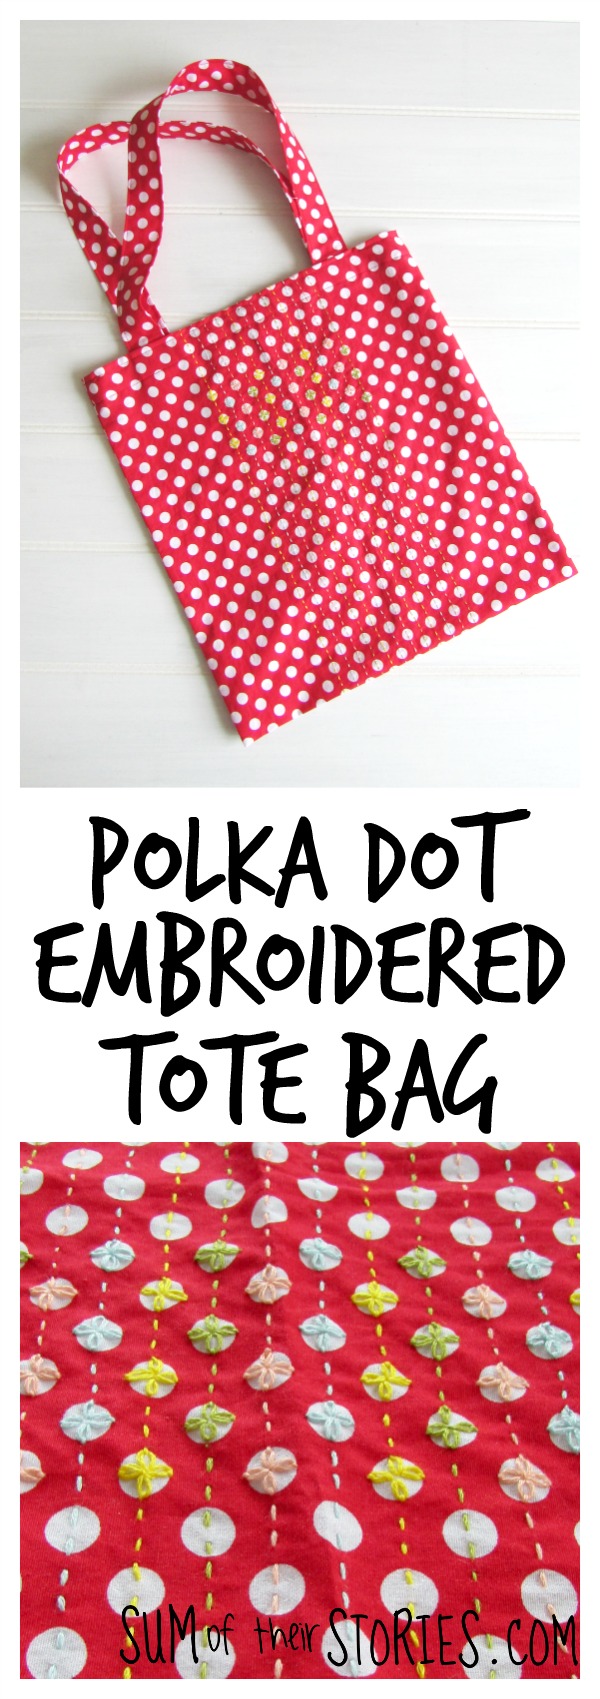 Polka dot embroidered tote bag